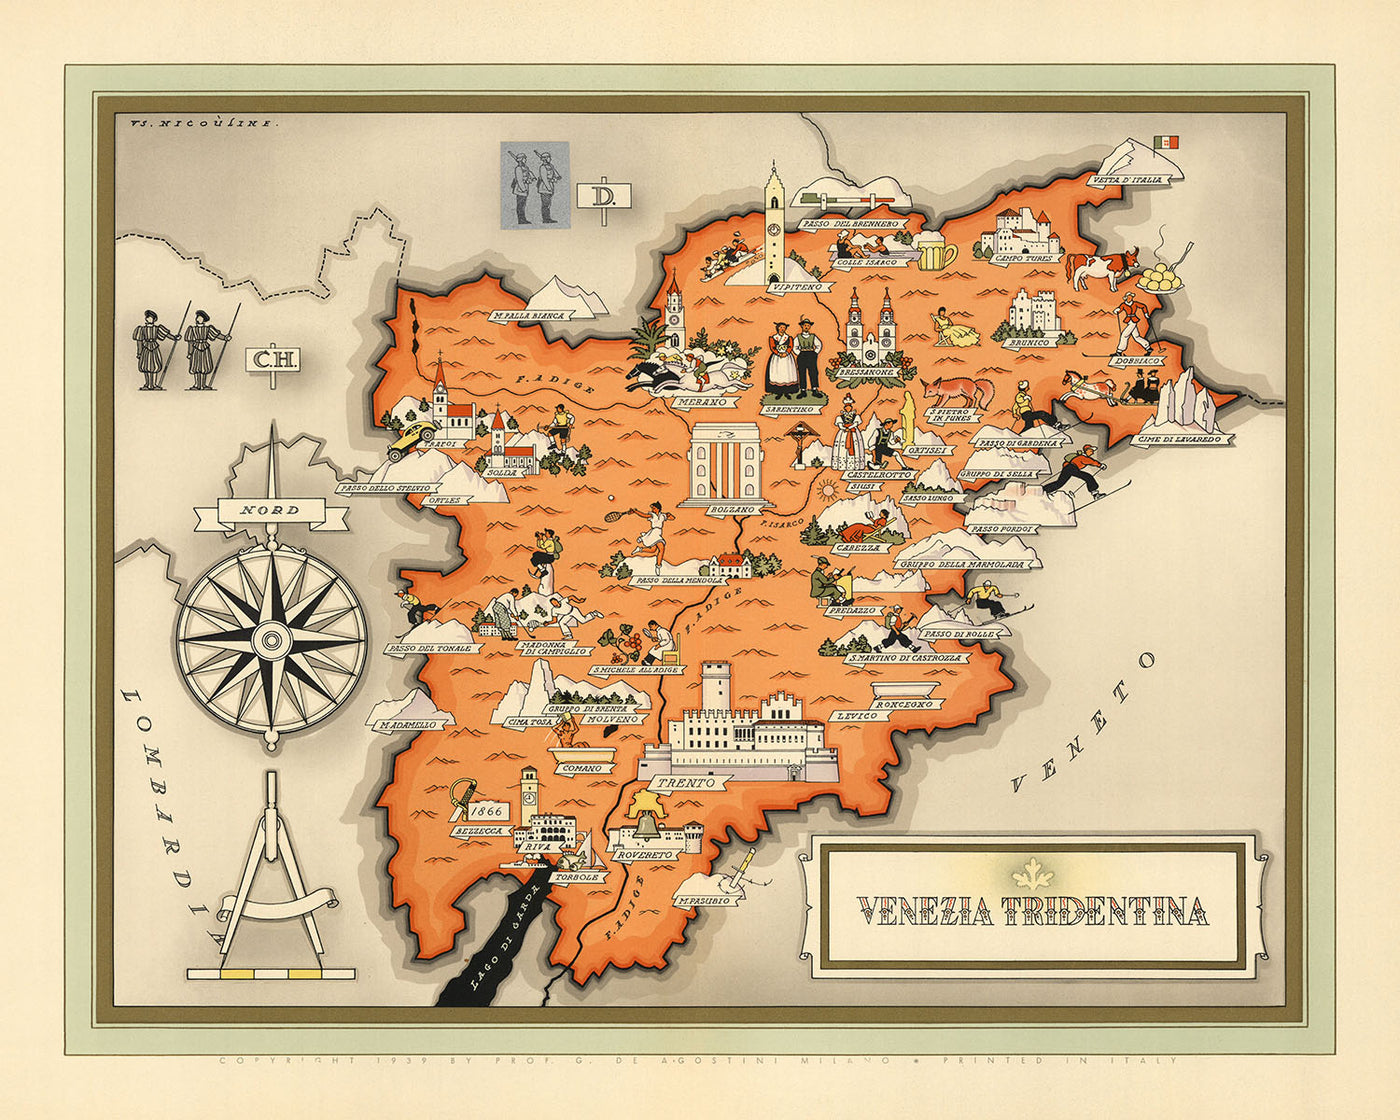 Old Pictorial Map of Trentino-Alto Adige by De Agostini, 1938: Trento, Bolzano, Bressanone, Merano, Rovereto